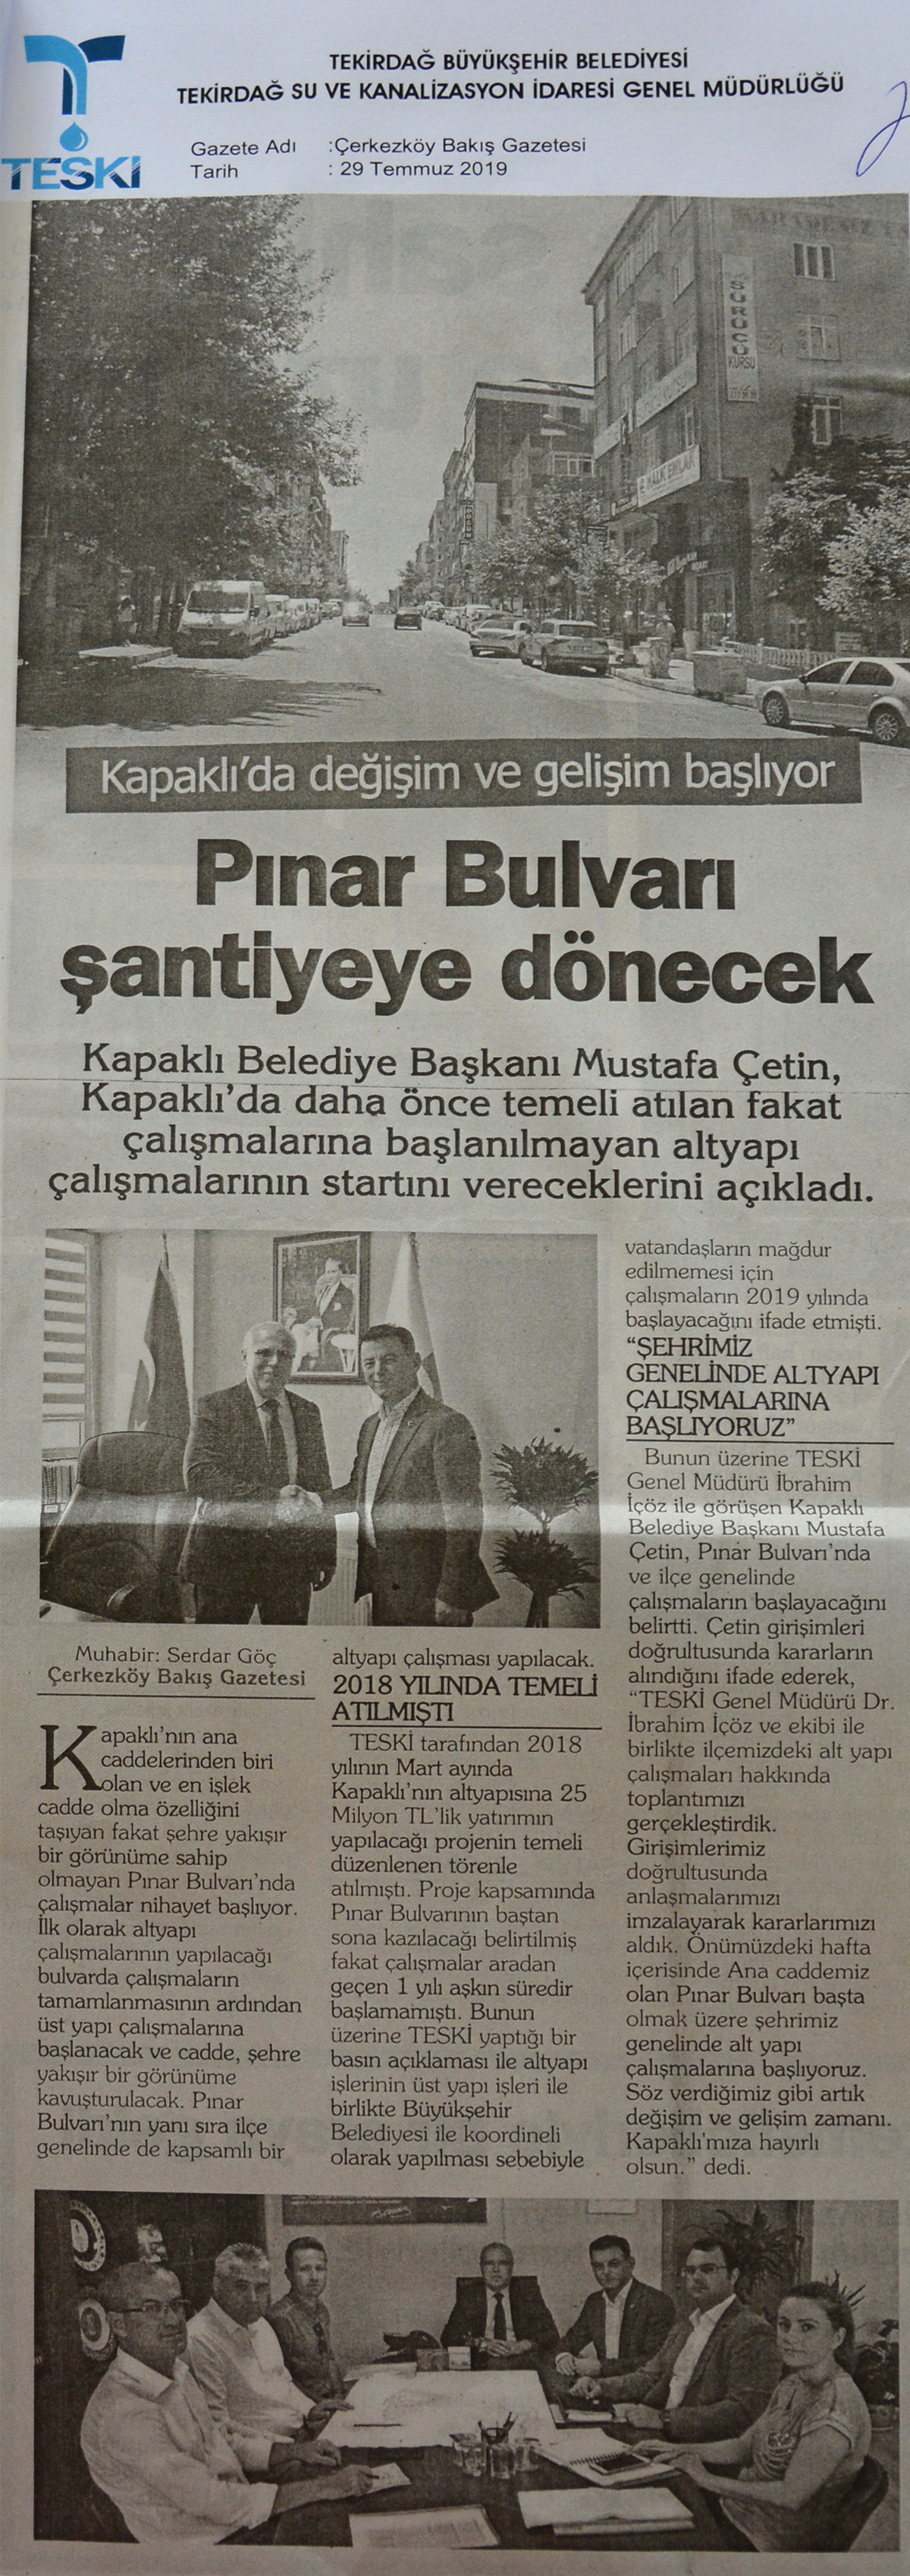 Pınar Bulvarı Şantiyeye Dönecek (Çerkezköy Bakış)